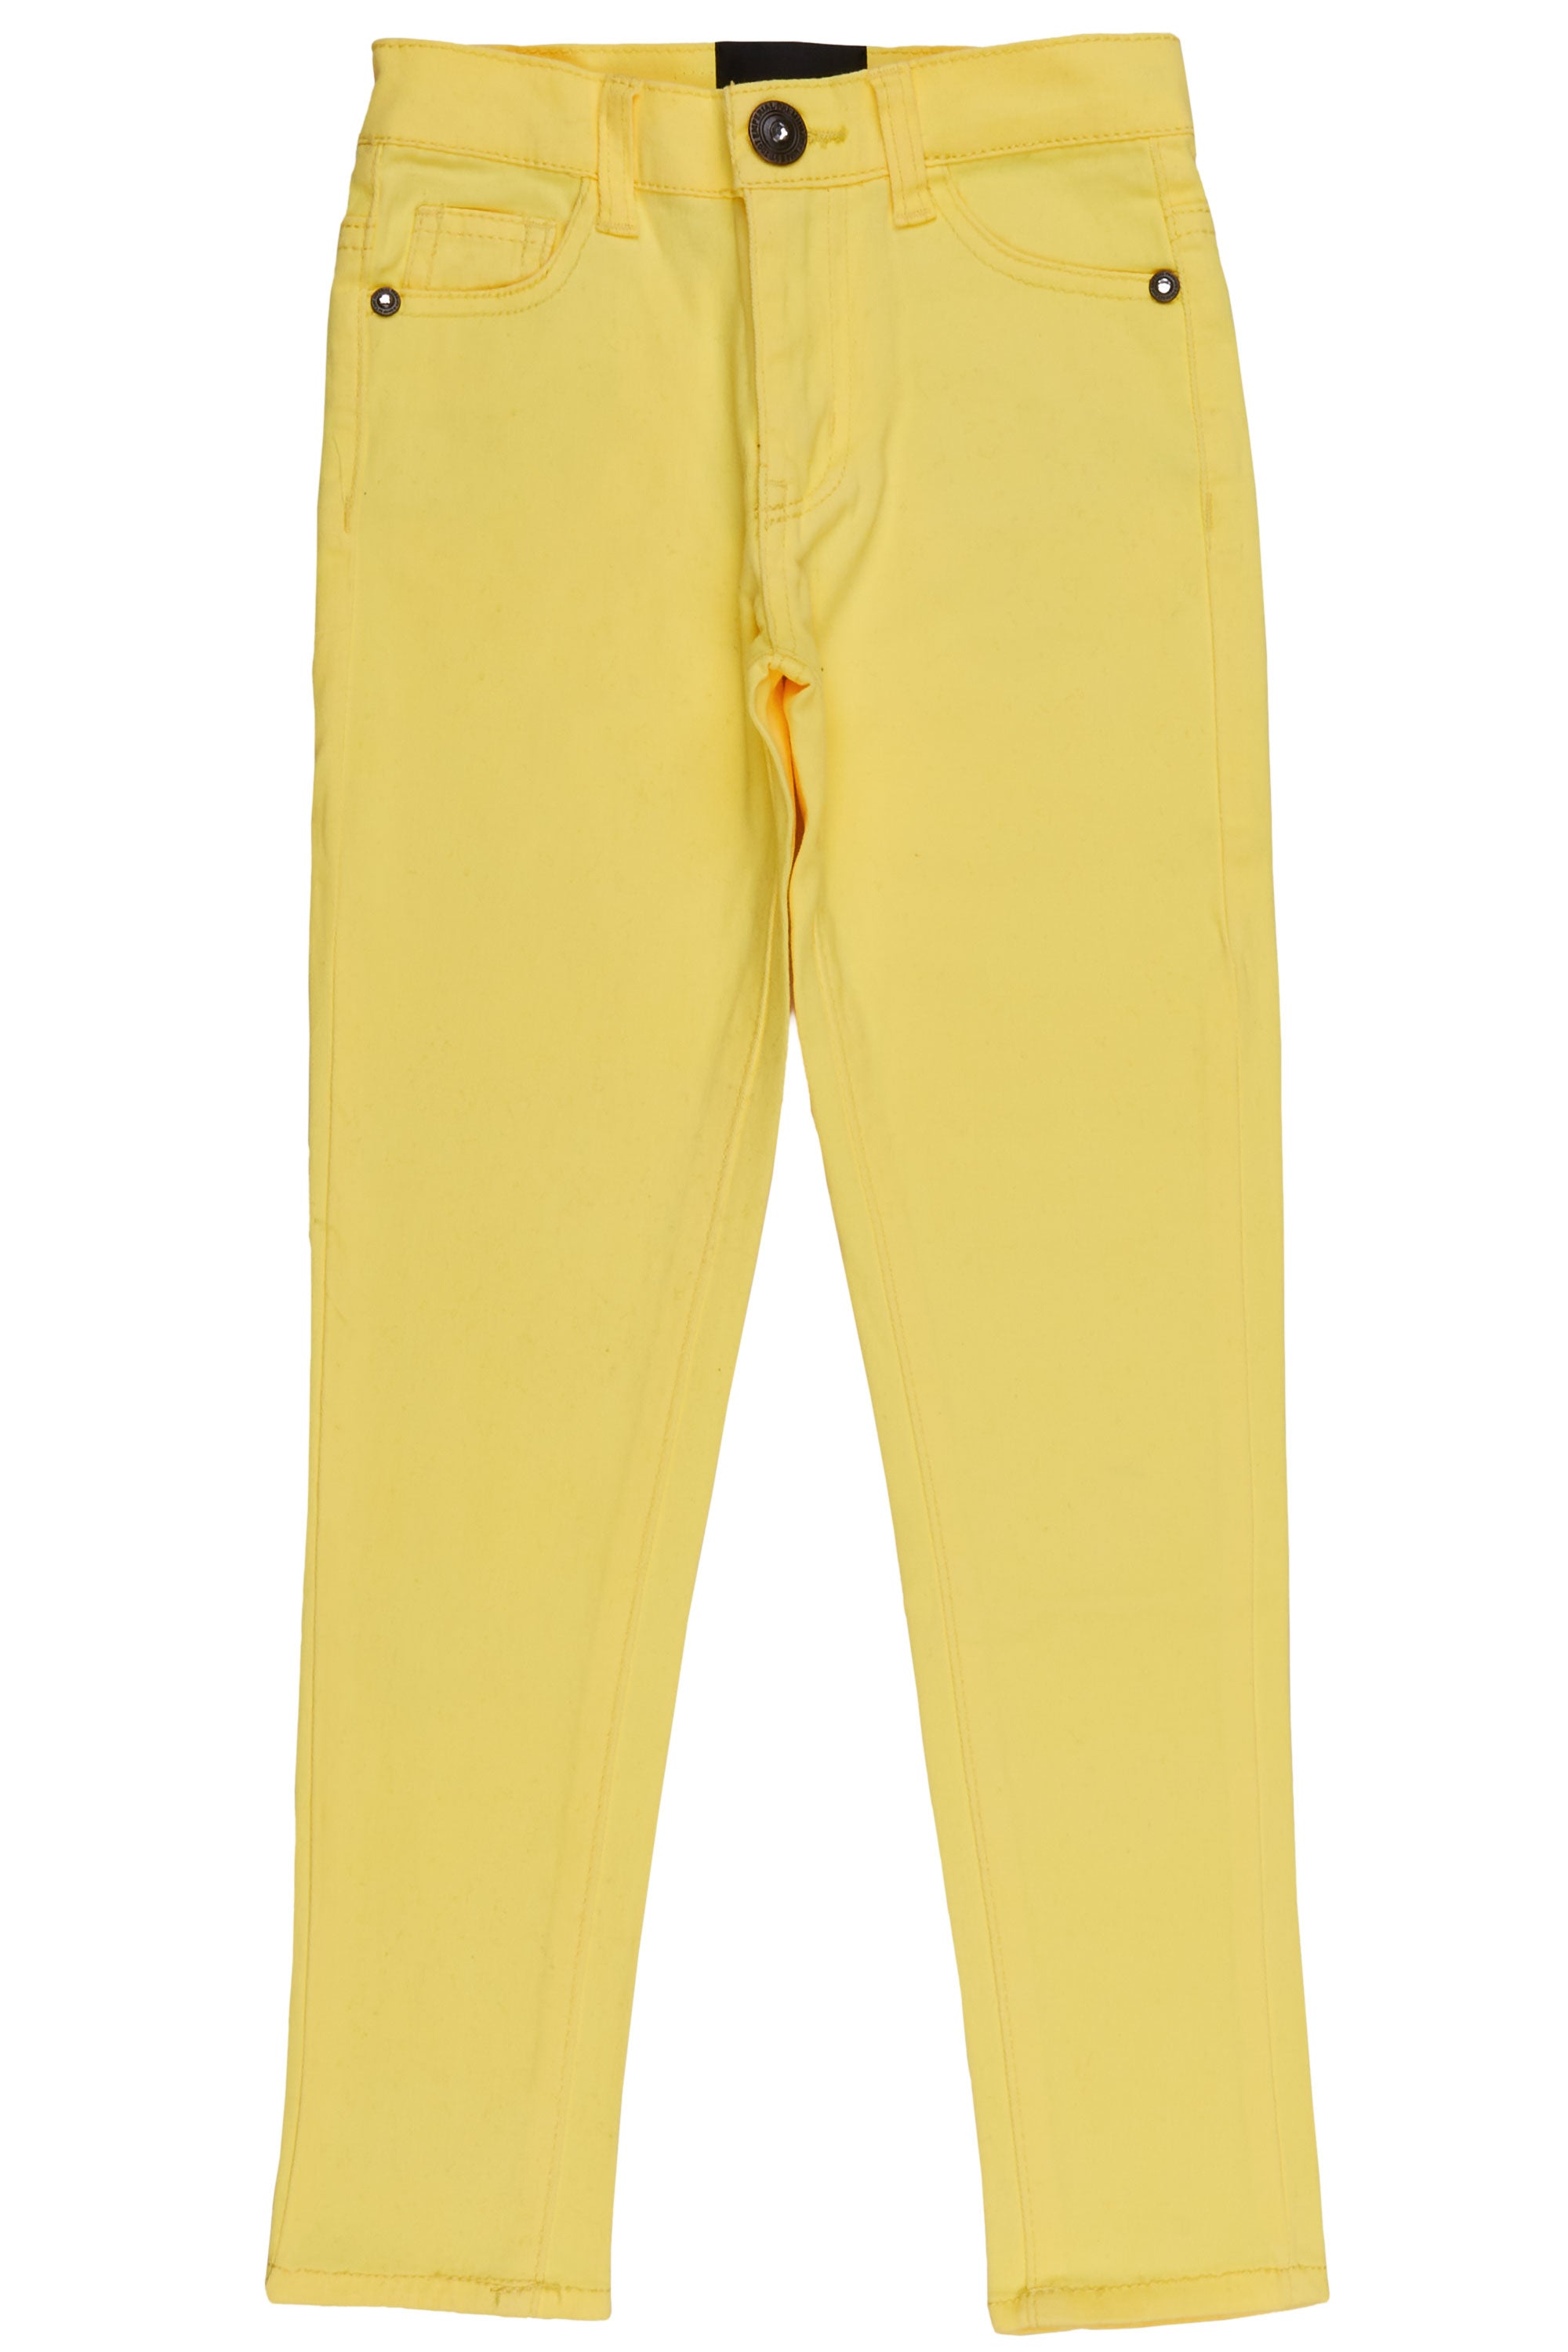 Girls Zilpha Neon Yellow 5 Pocket Jean